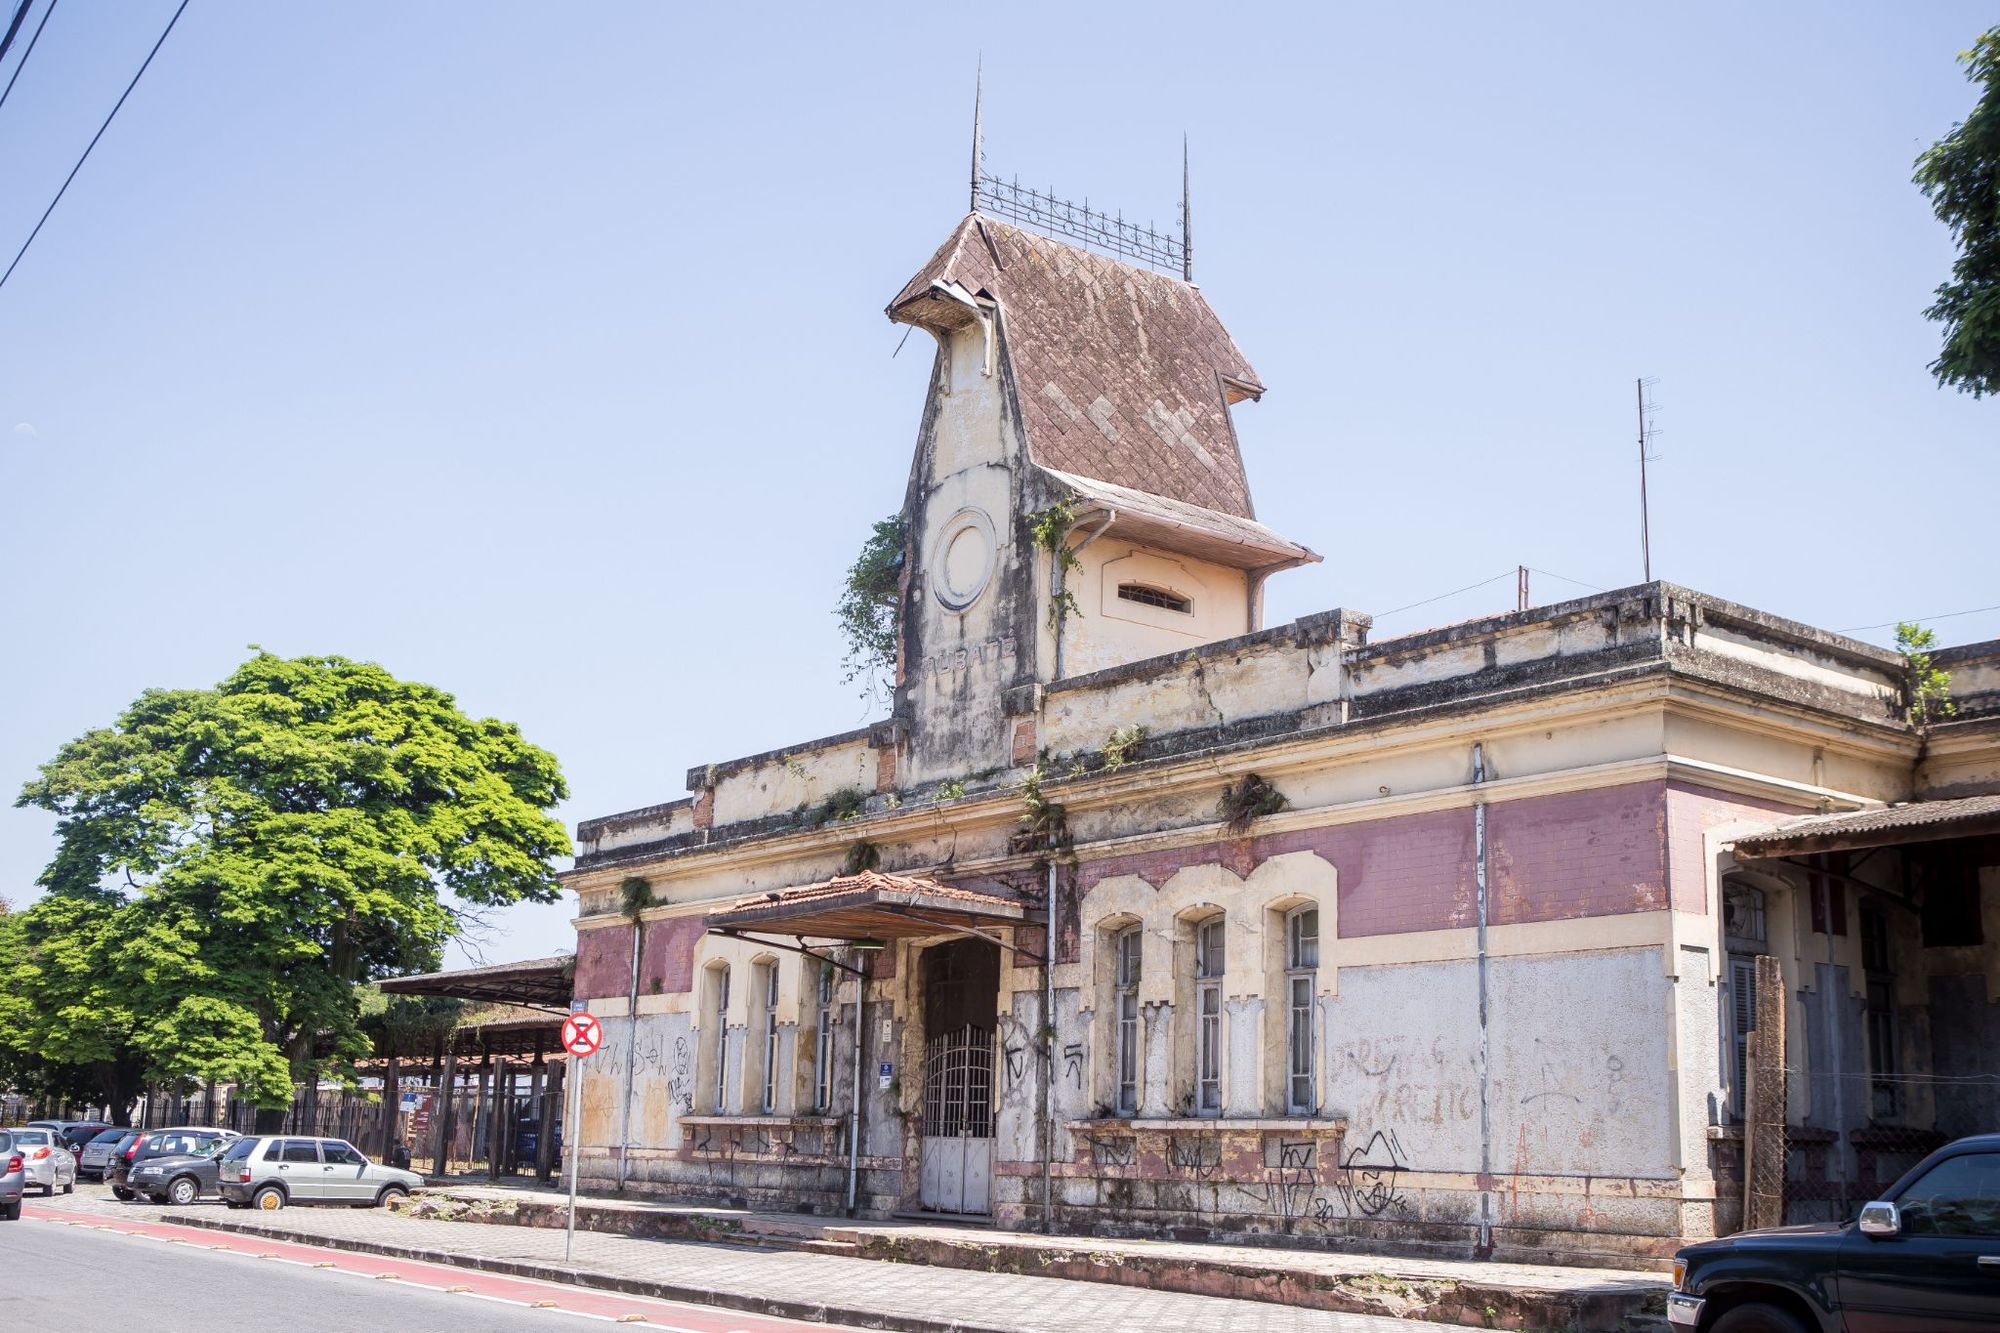 Antiga estação ferroviária de Taubaté recebe investimento de R$6,2 milhões para restauração